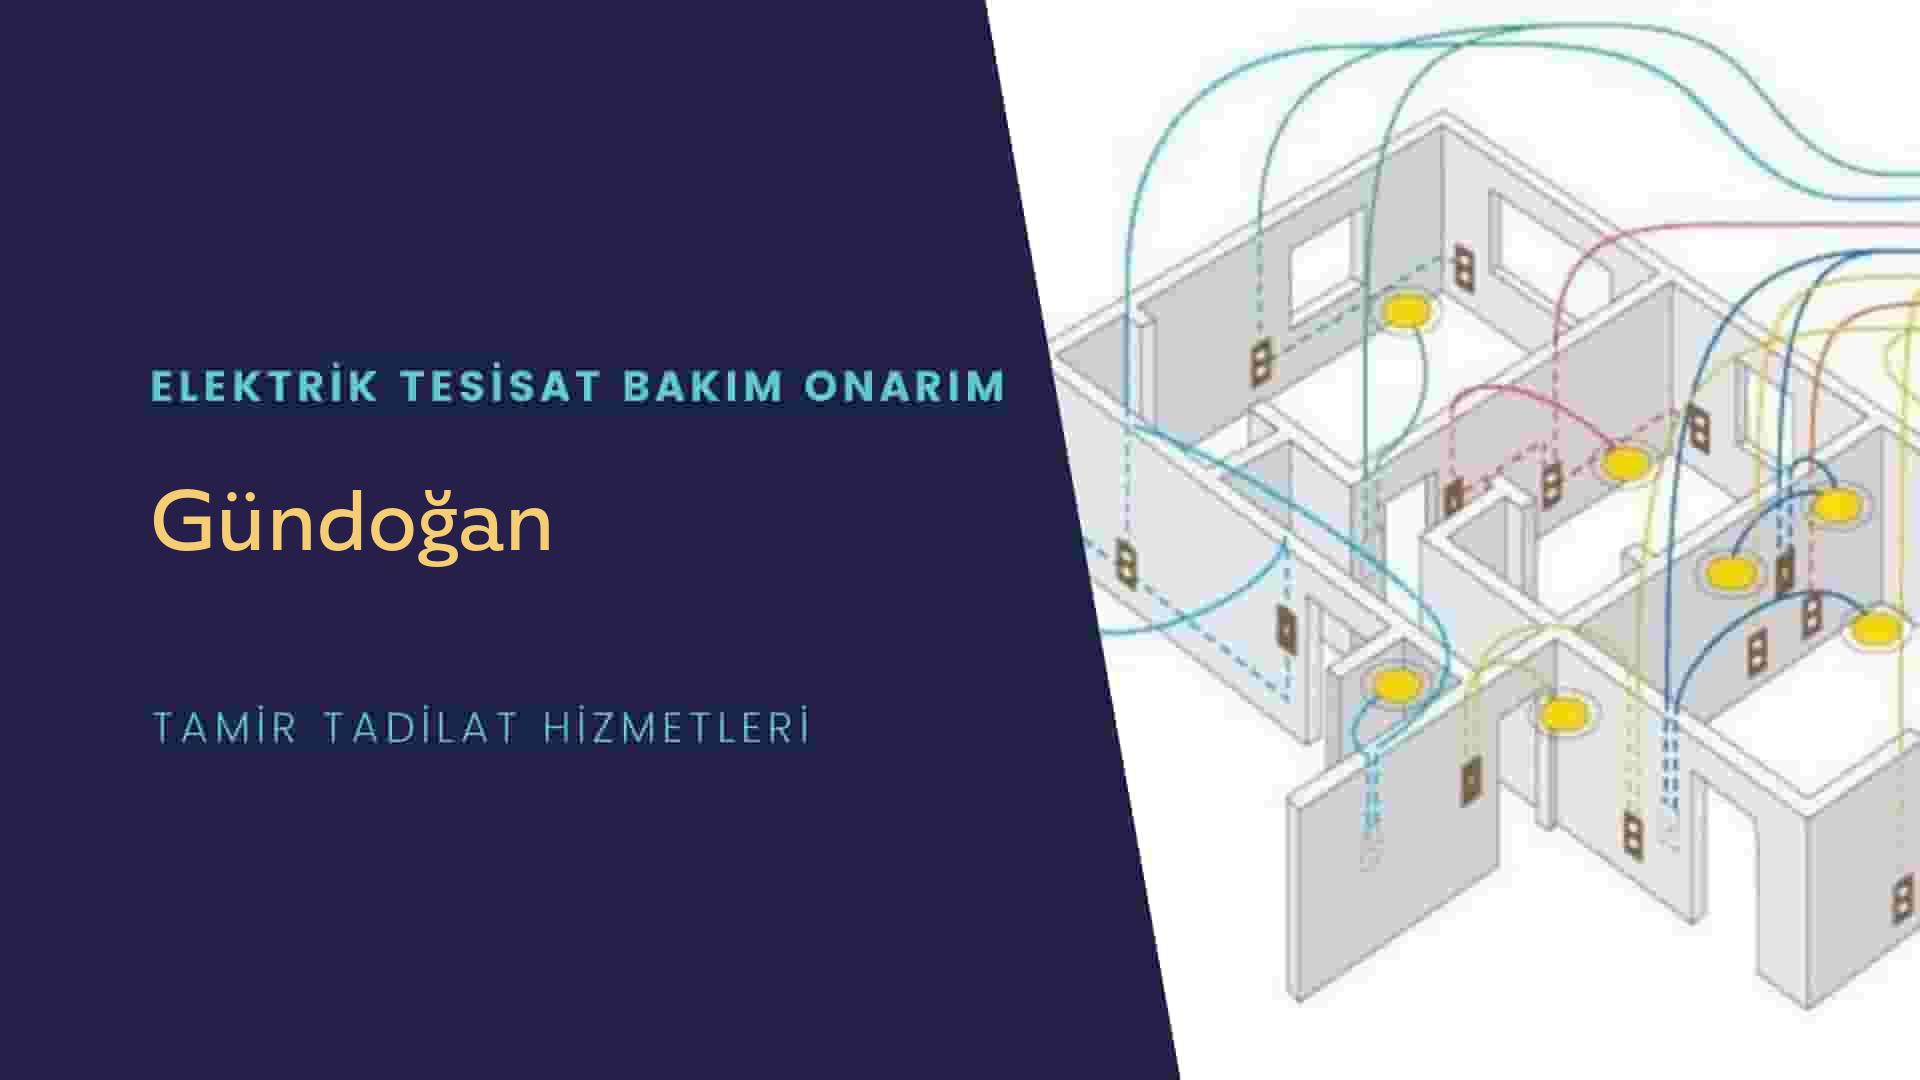 Gündoğan'da elektrik tesisatı ustalarımı arıyorsunuz doğru adrestenizi Gündoğan elektrik tesisatı ustalarımız 7/24 sizlere hizmet vermekten mutluluk duyar.